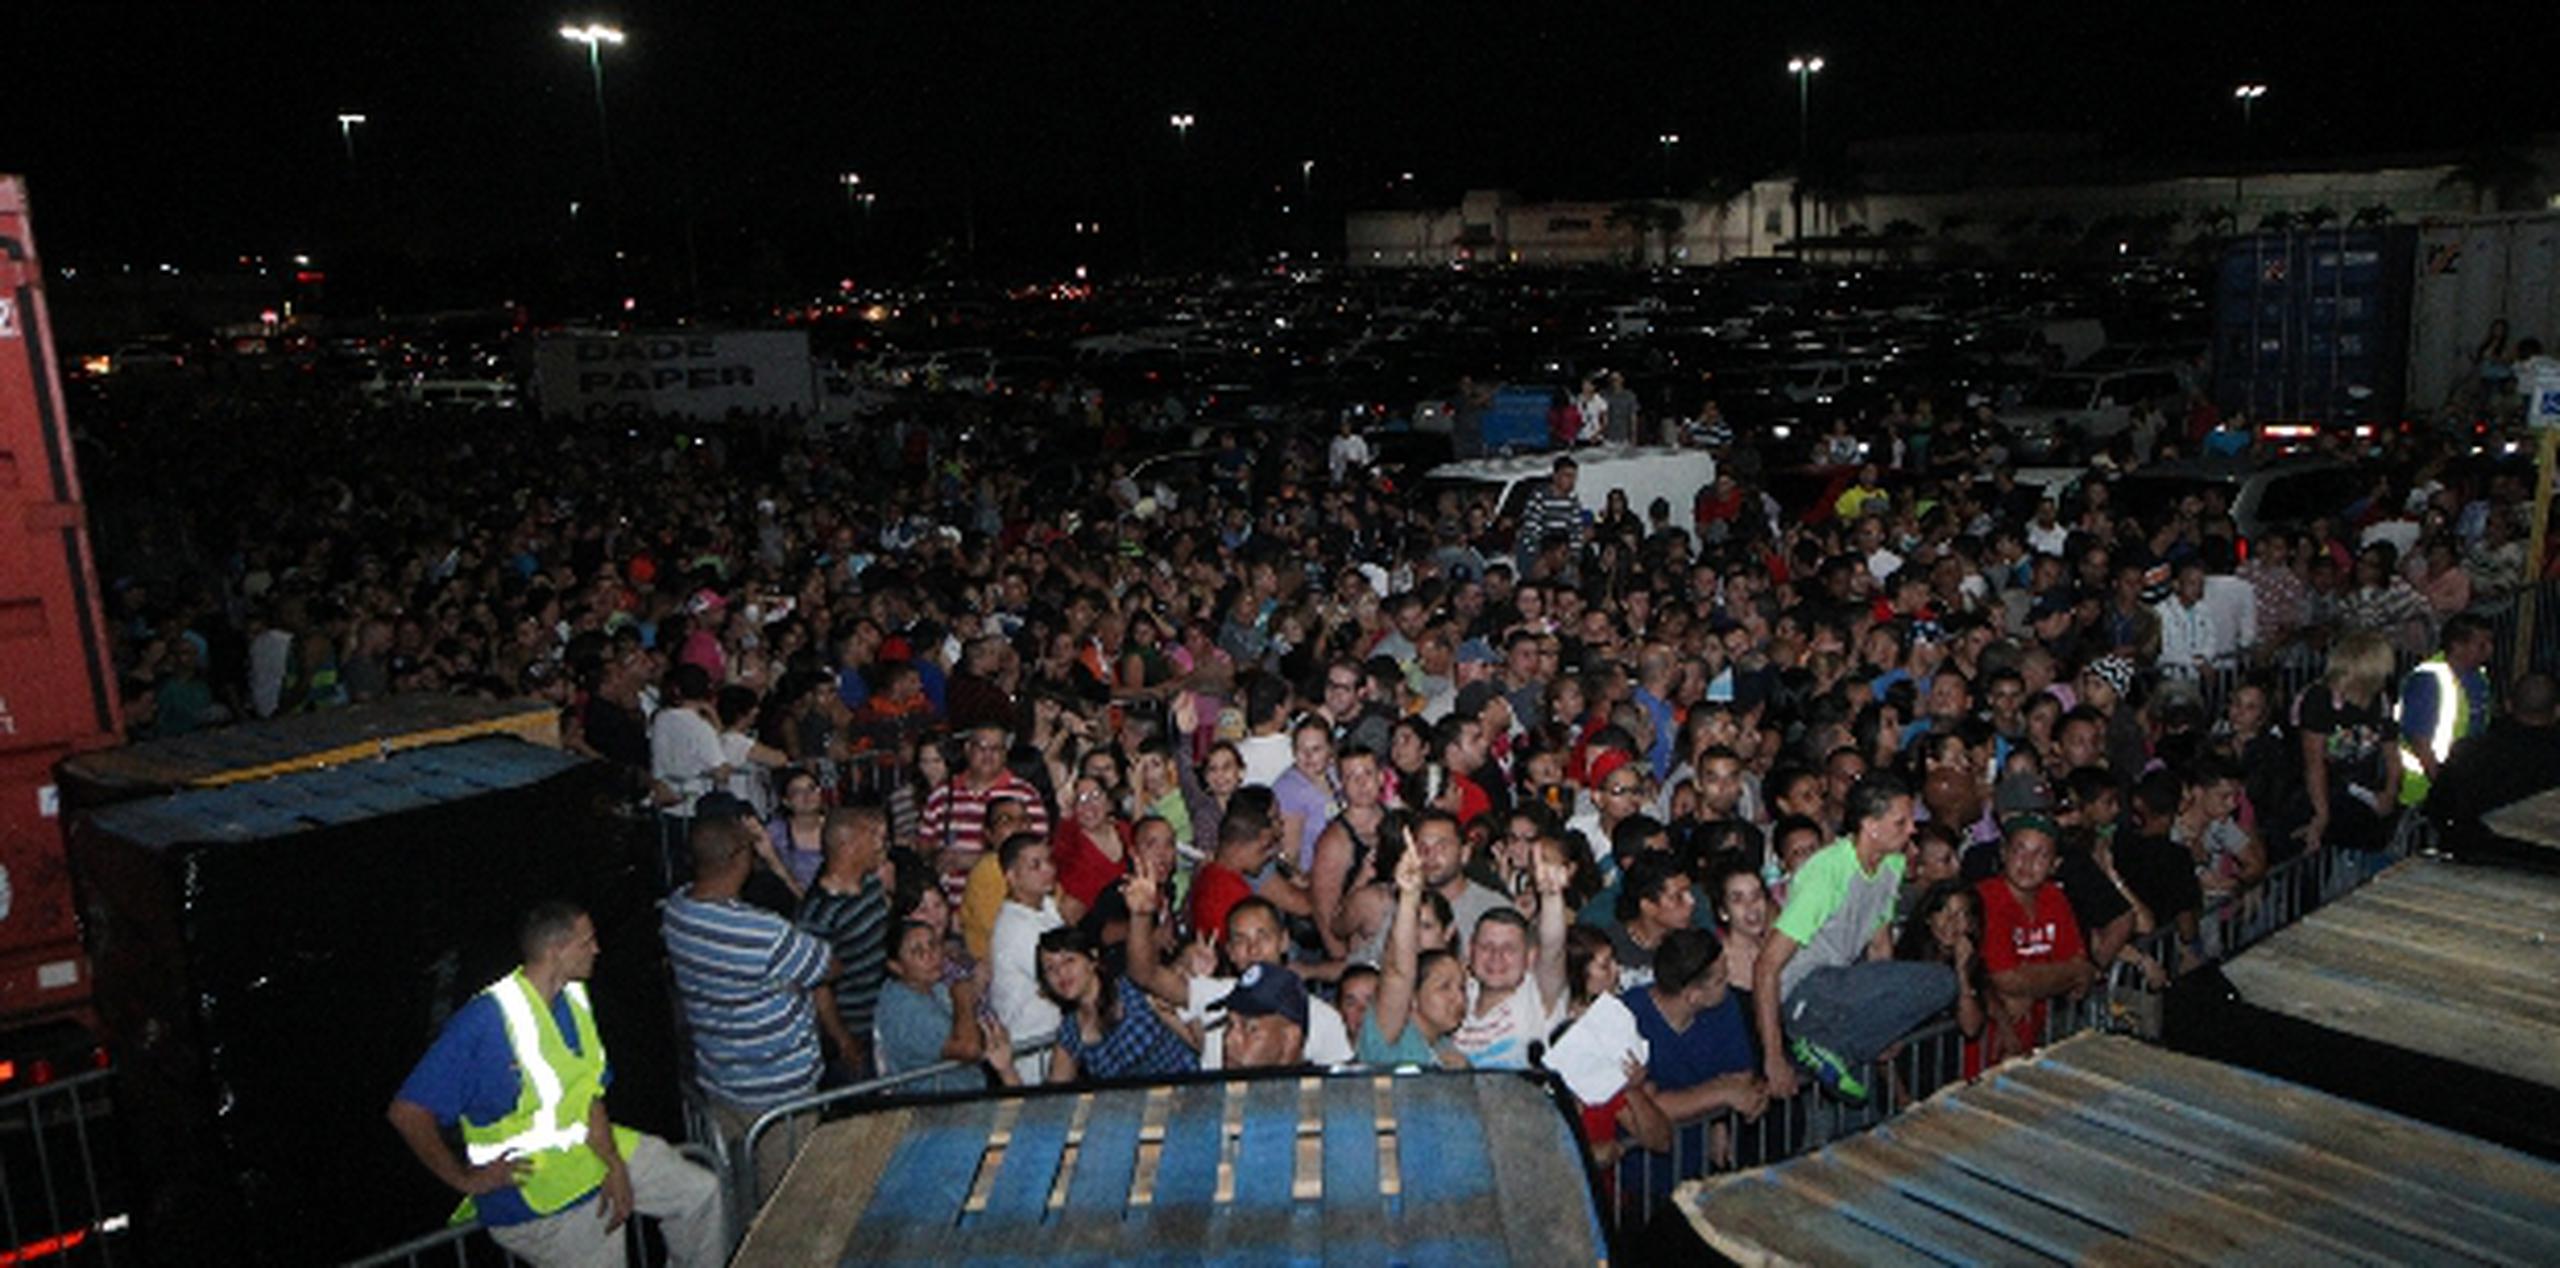 Las personas literalmente “forraban” el estacionamiento del centro comercial de Hatillo. (Para Primera Hora / Nelson Reyes Faria)